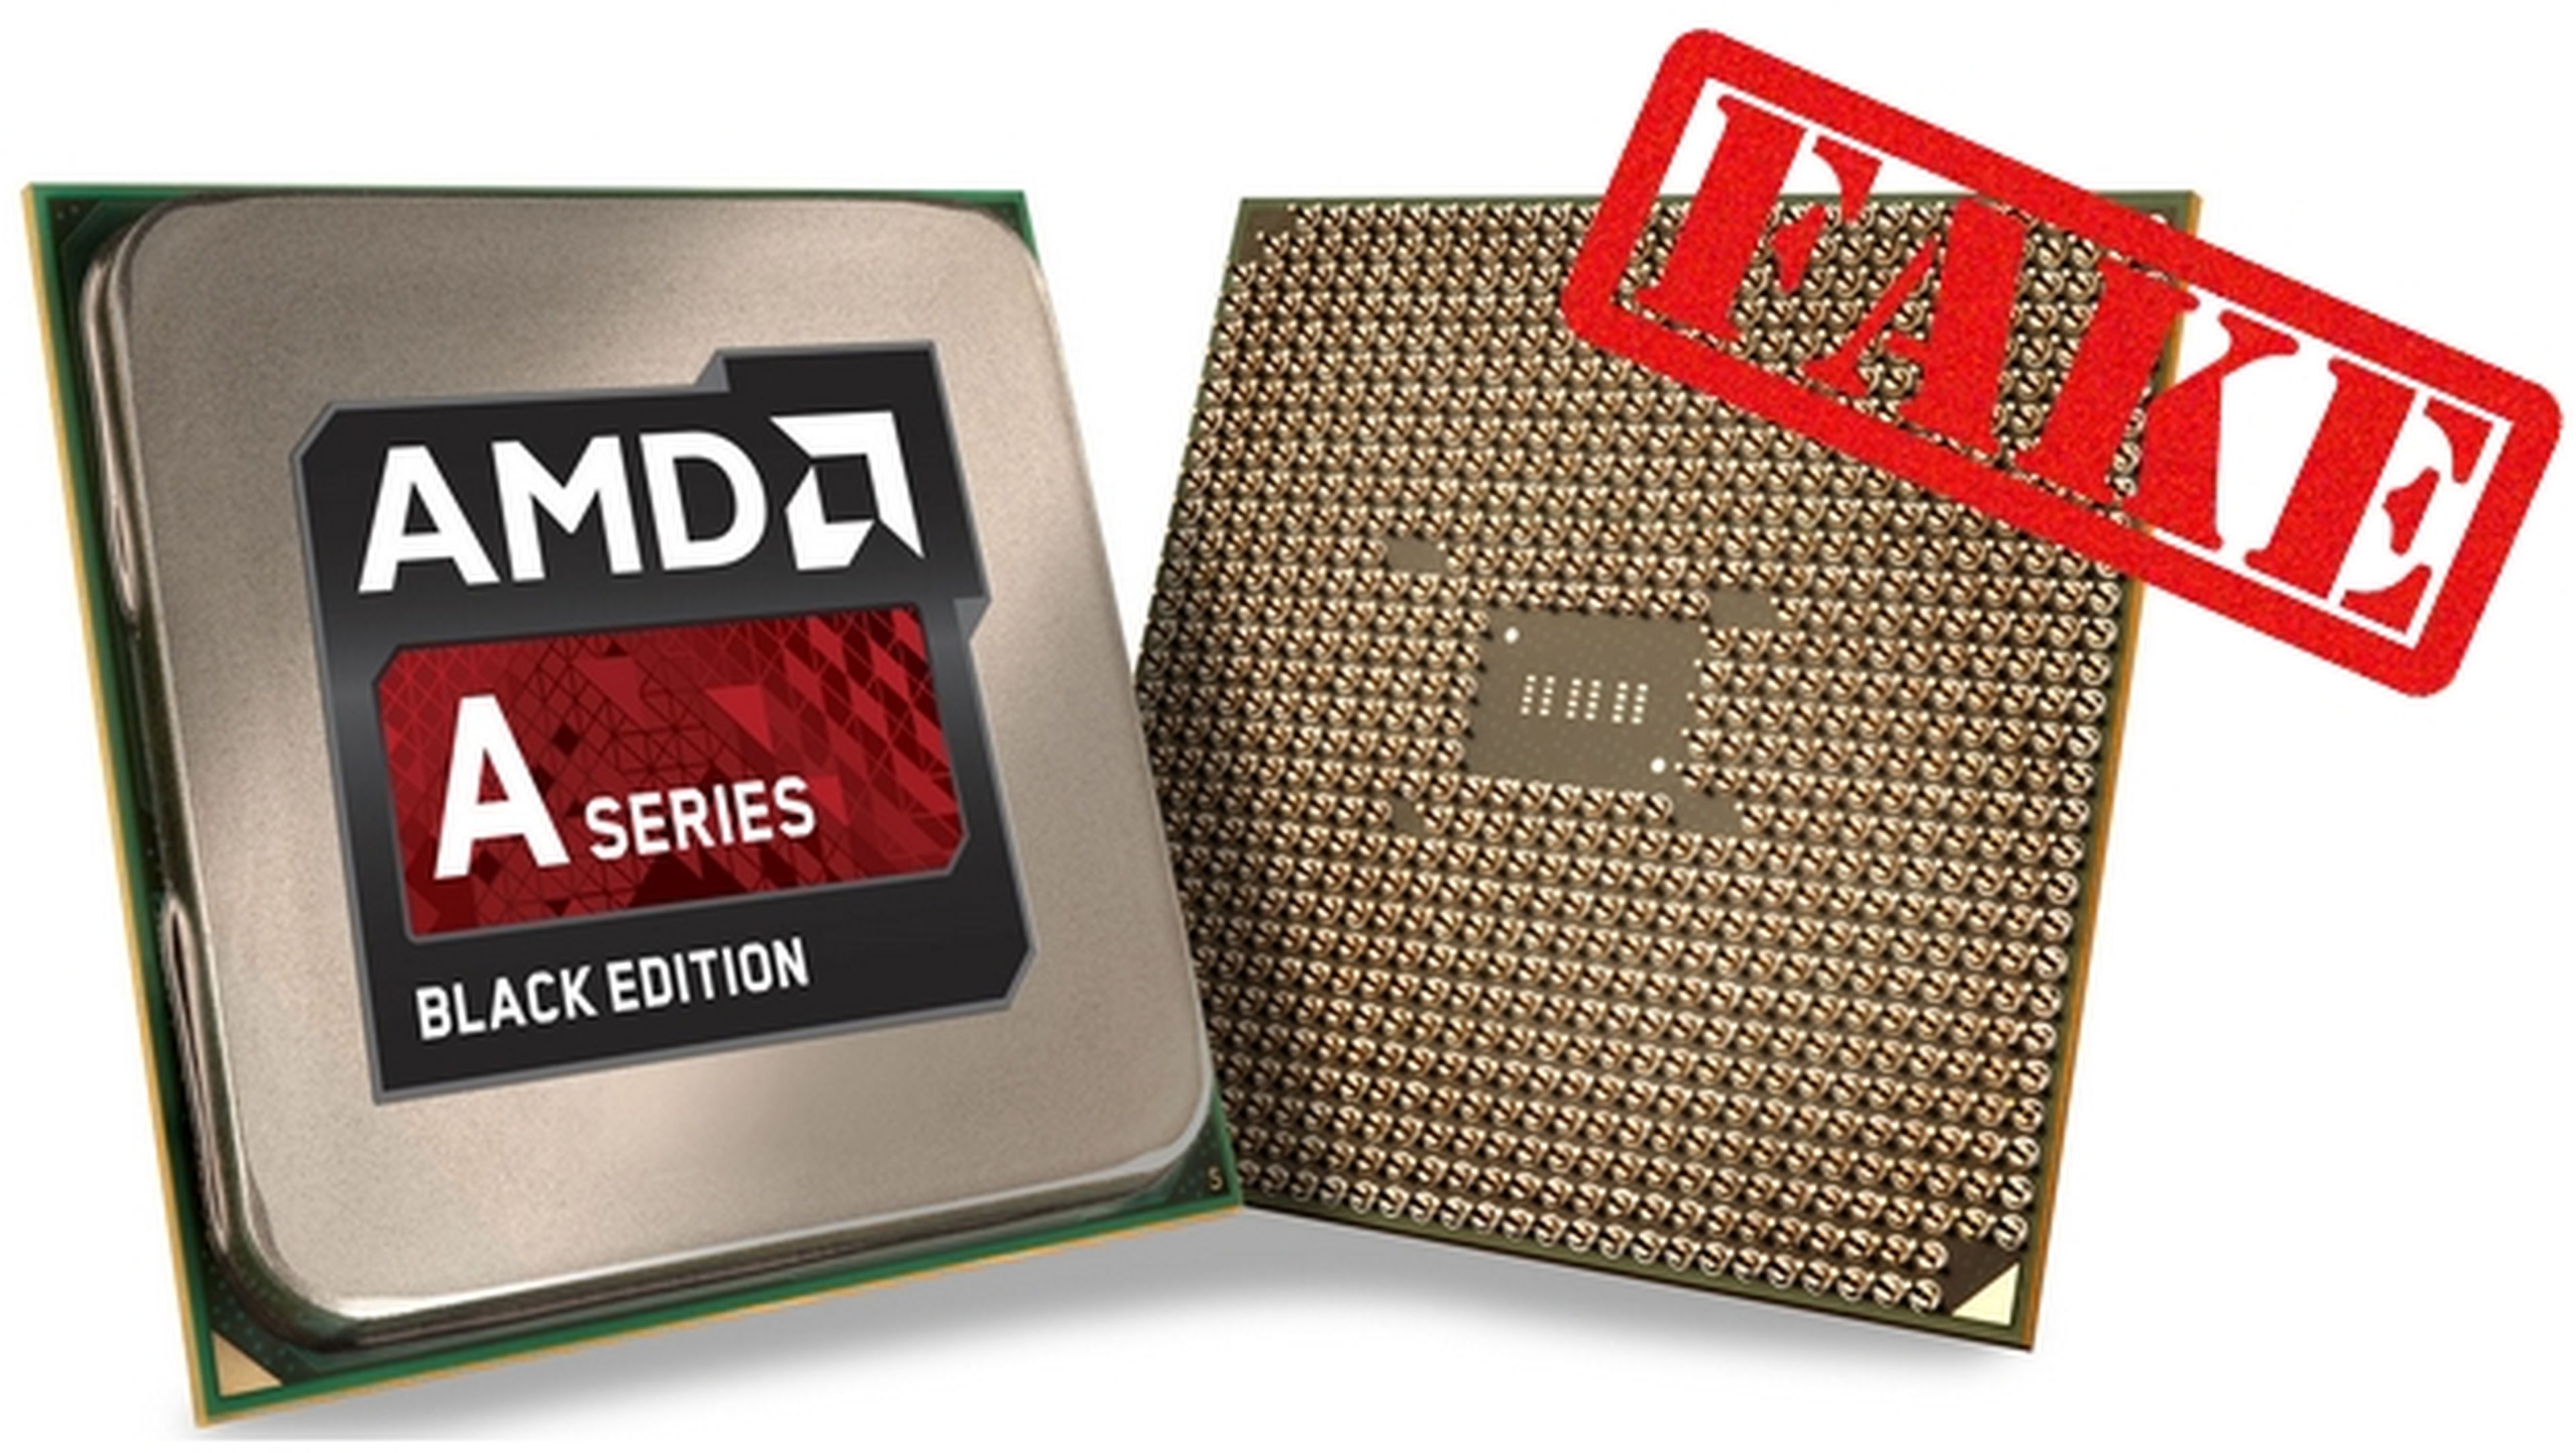 ¡Cuidado! Detectan CPUs de AMD falsas a la venta en Amazon.